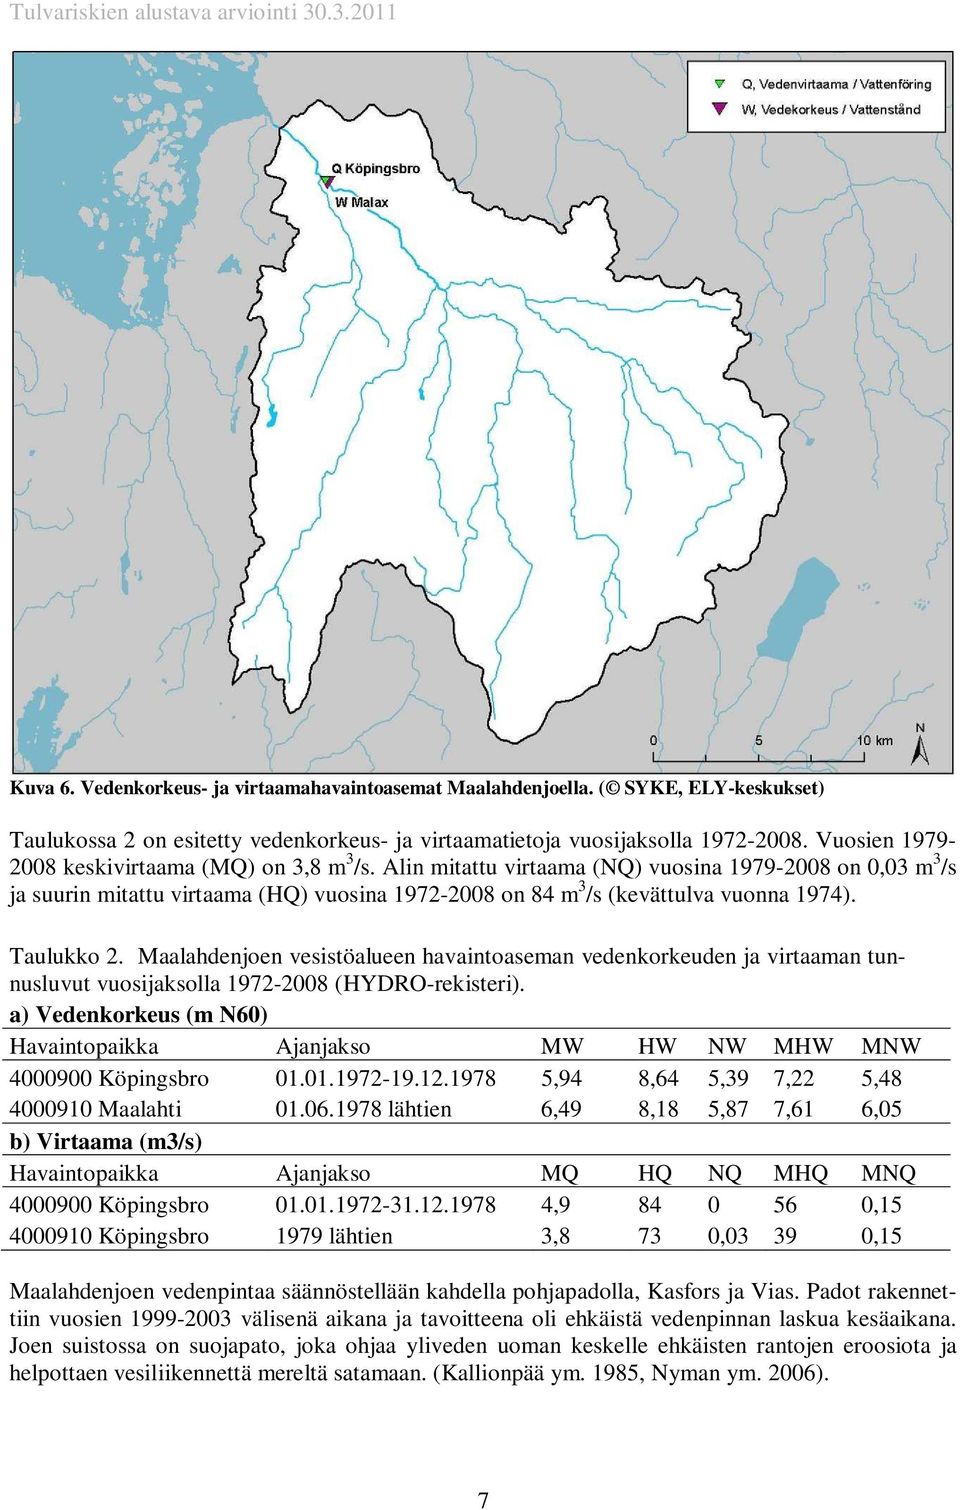 Taulukko 2. Maalahdenjoen vesistöalueen havaintoaseman vedenkorkeuden ja virtaaman tunnusluvut vuosijaksolla 1972-2008 (HYDRO-rekisteri).